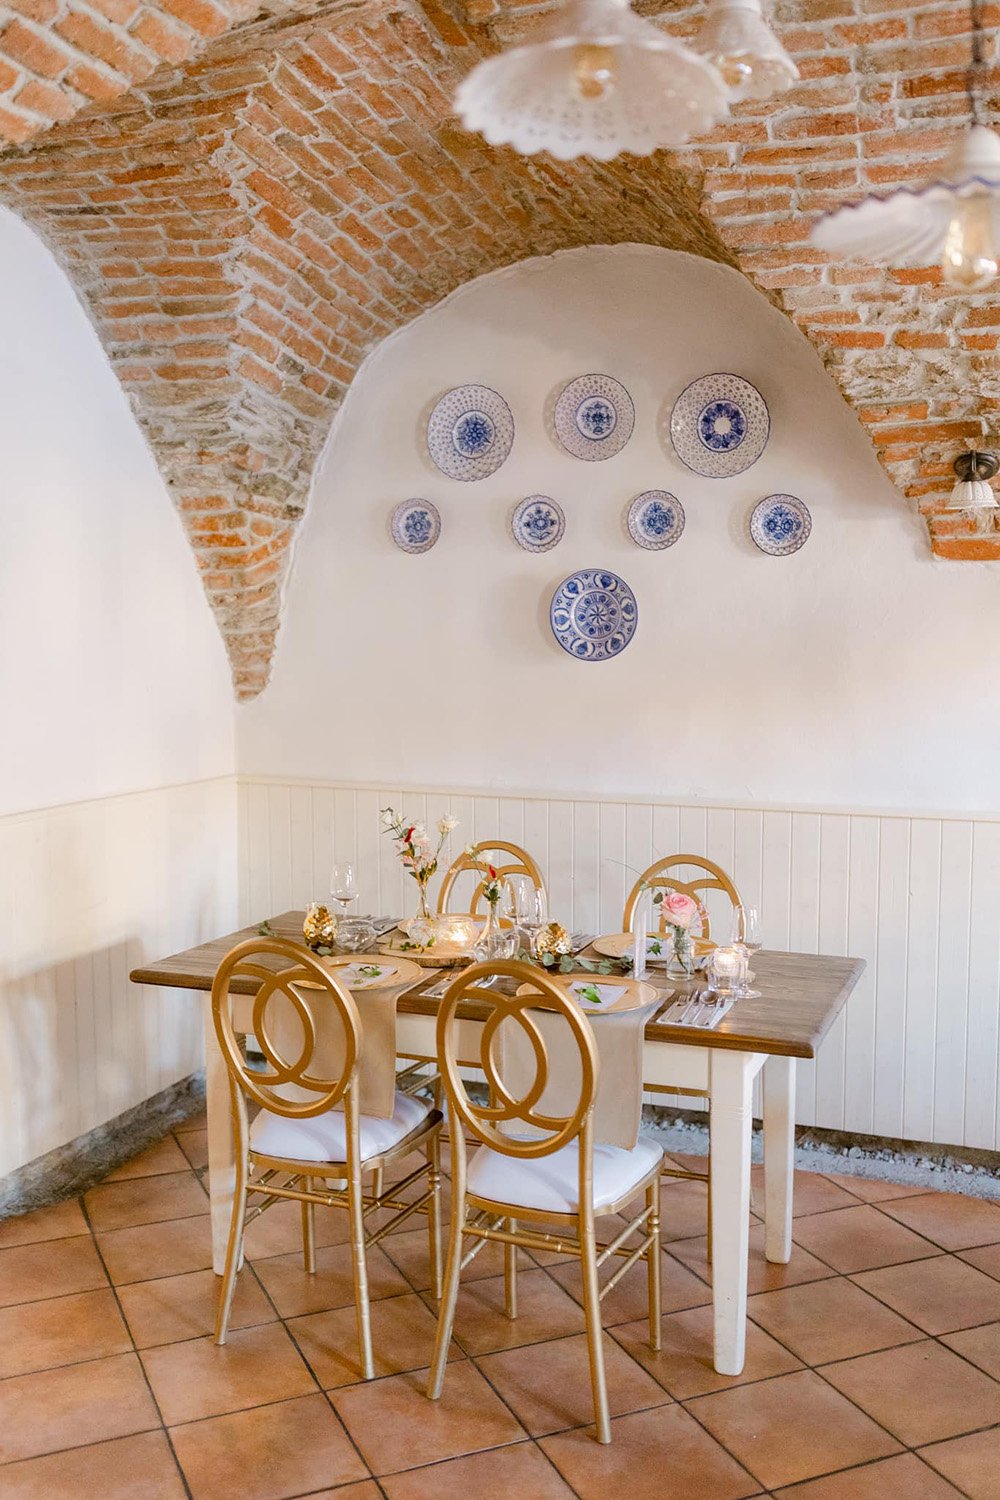 Restauracia Stary dom v Modre s krasnym interierom.jpg